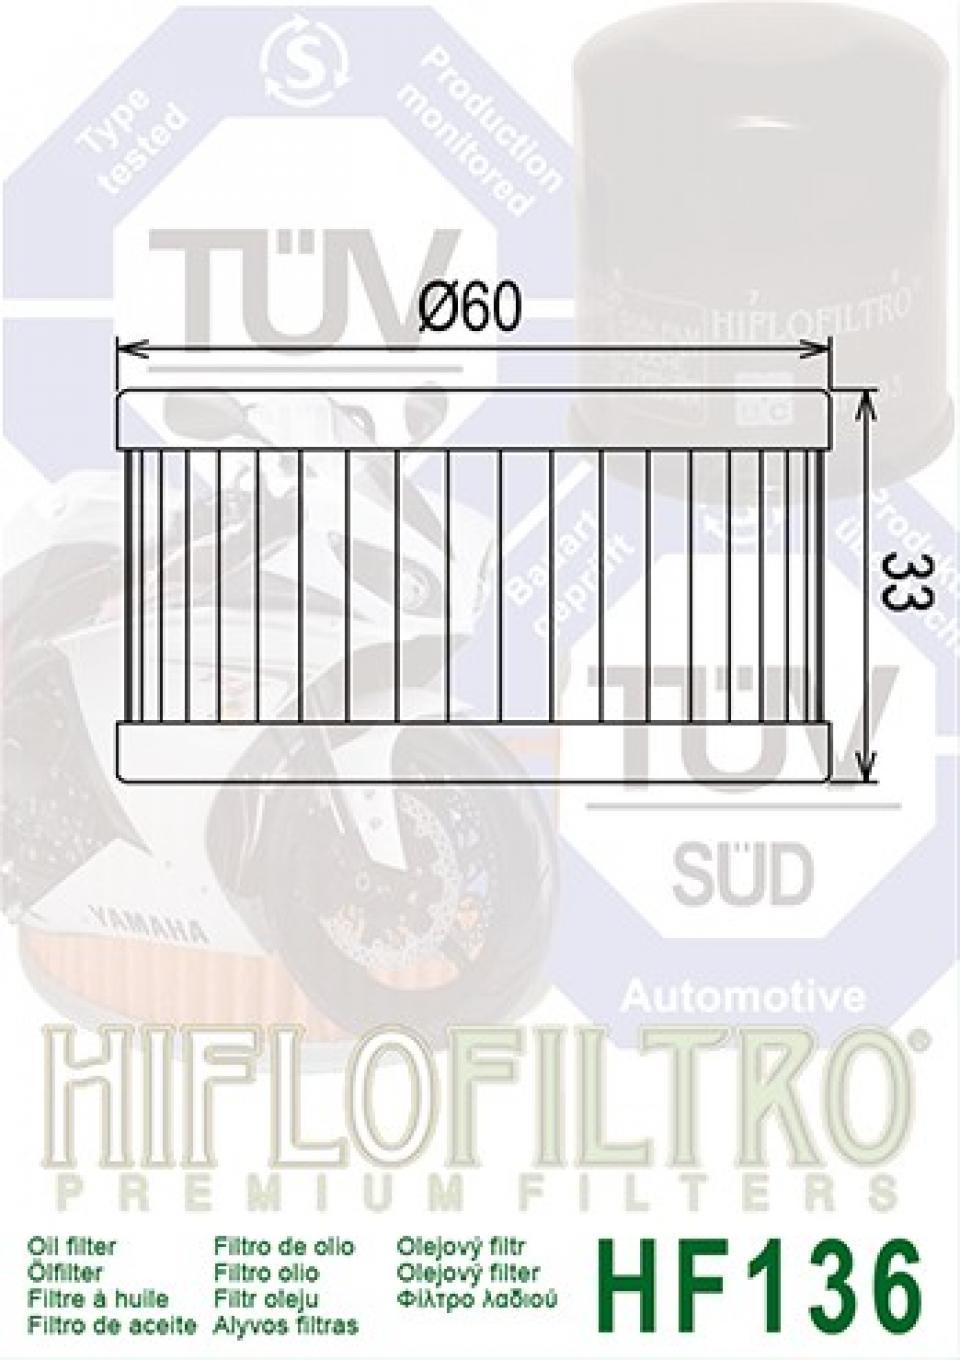 Filtre à huile Hiflo Filtro pour Moto Suzuki 400 Gn Lt 1980-1982 Neuf